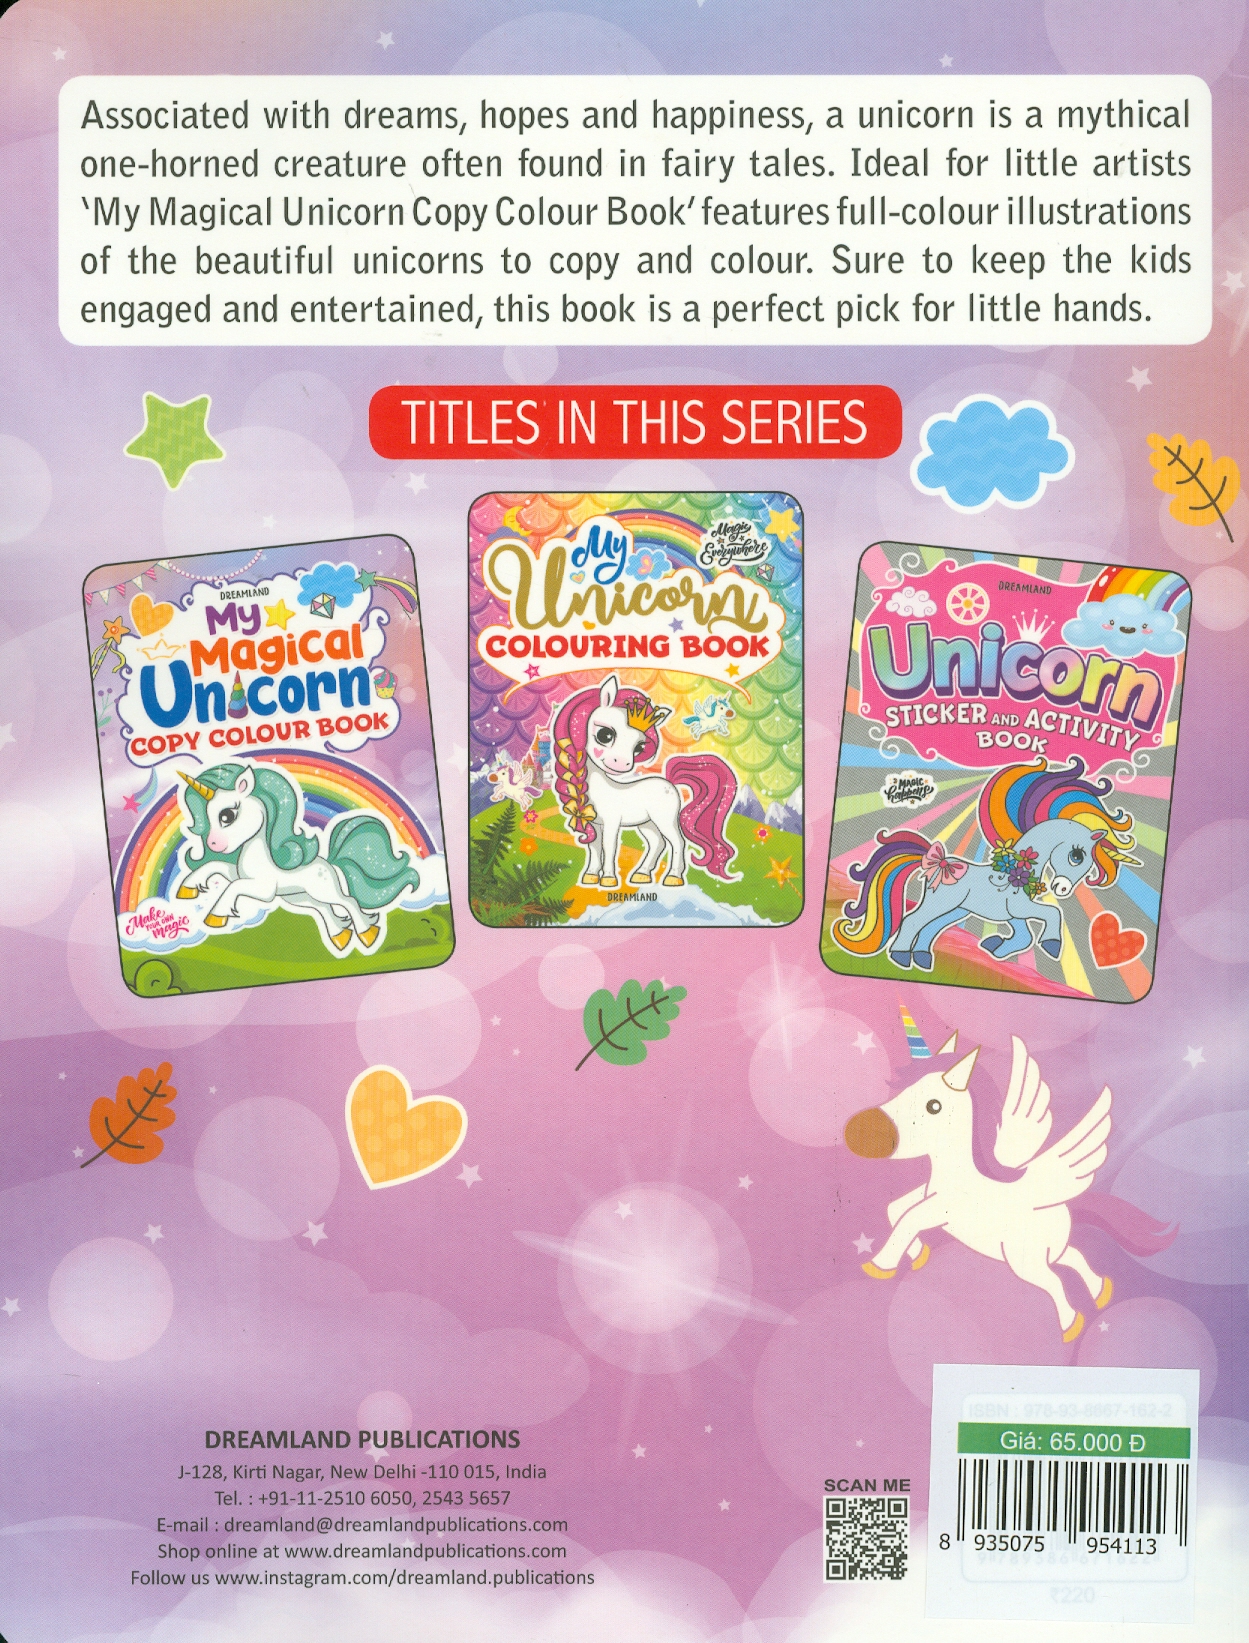 My Magical Unicorn Copy Colour Book for Children Age 2 -7 Years - Make Your Own Magic Colouring Book (Kỳ Lân Huyền Diệu Của Tôi - Sách Tô Màu)